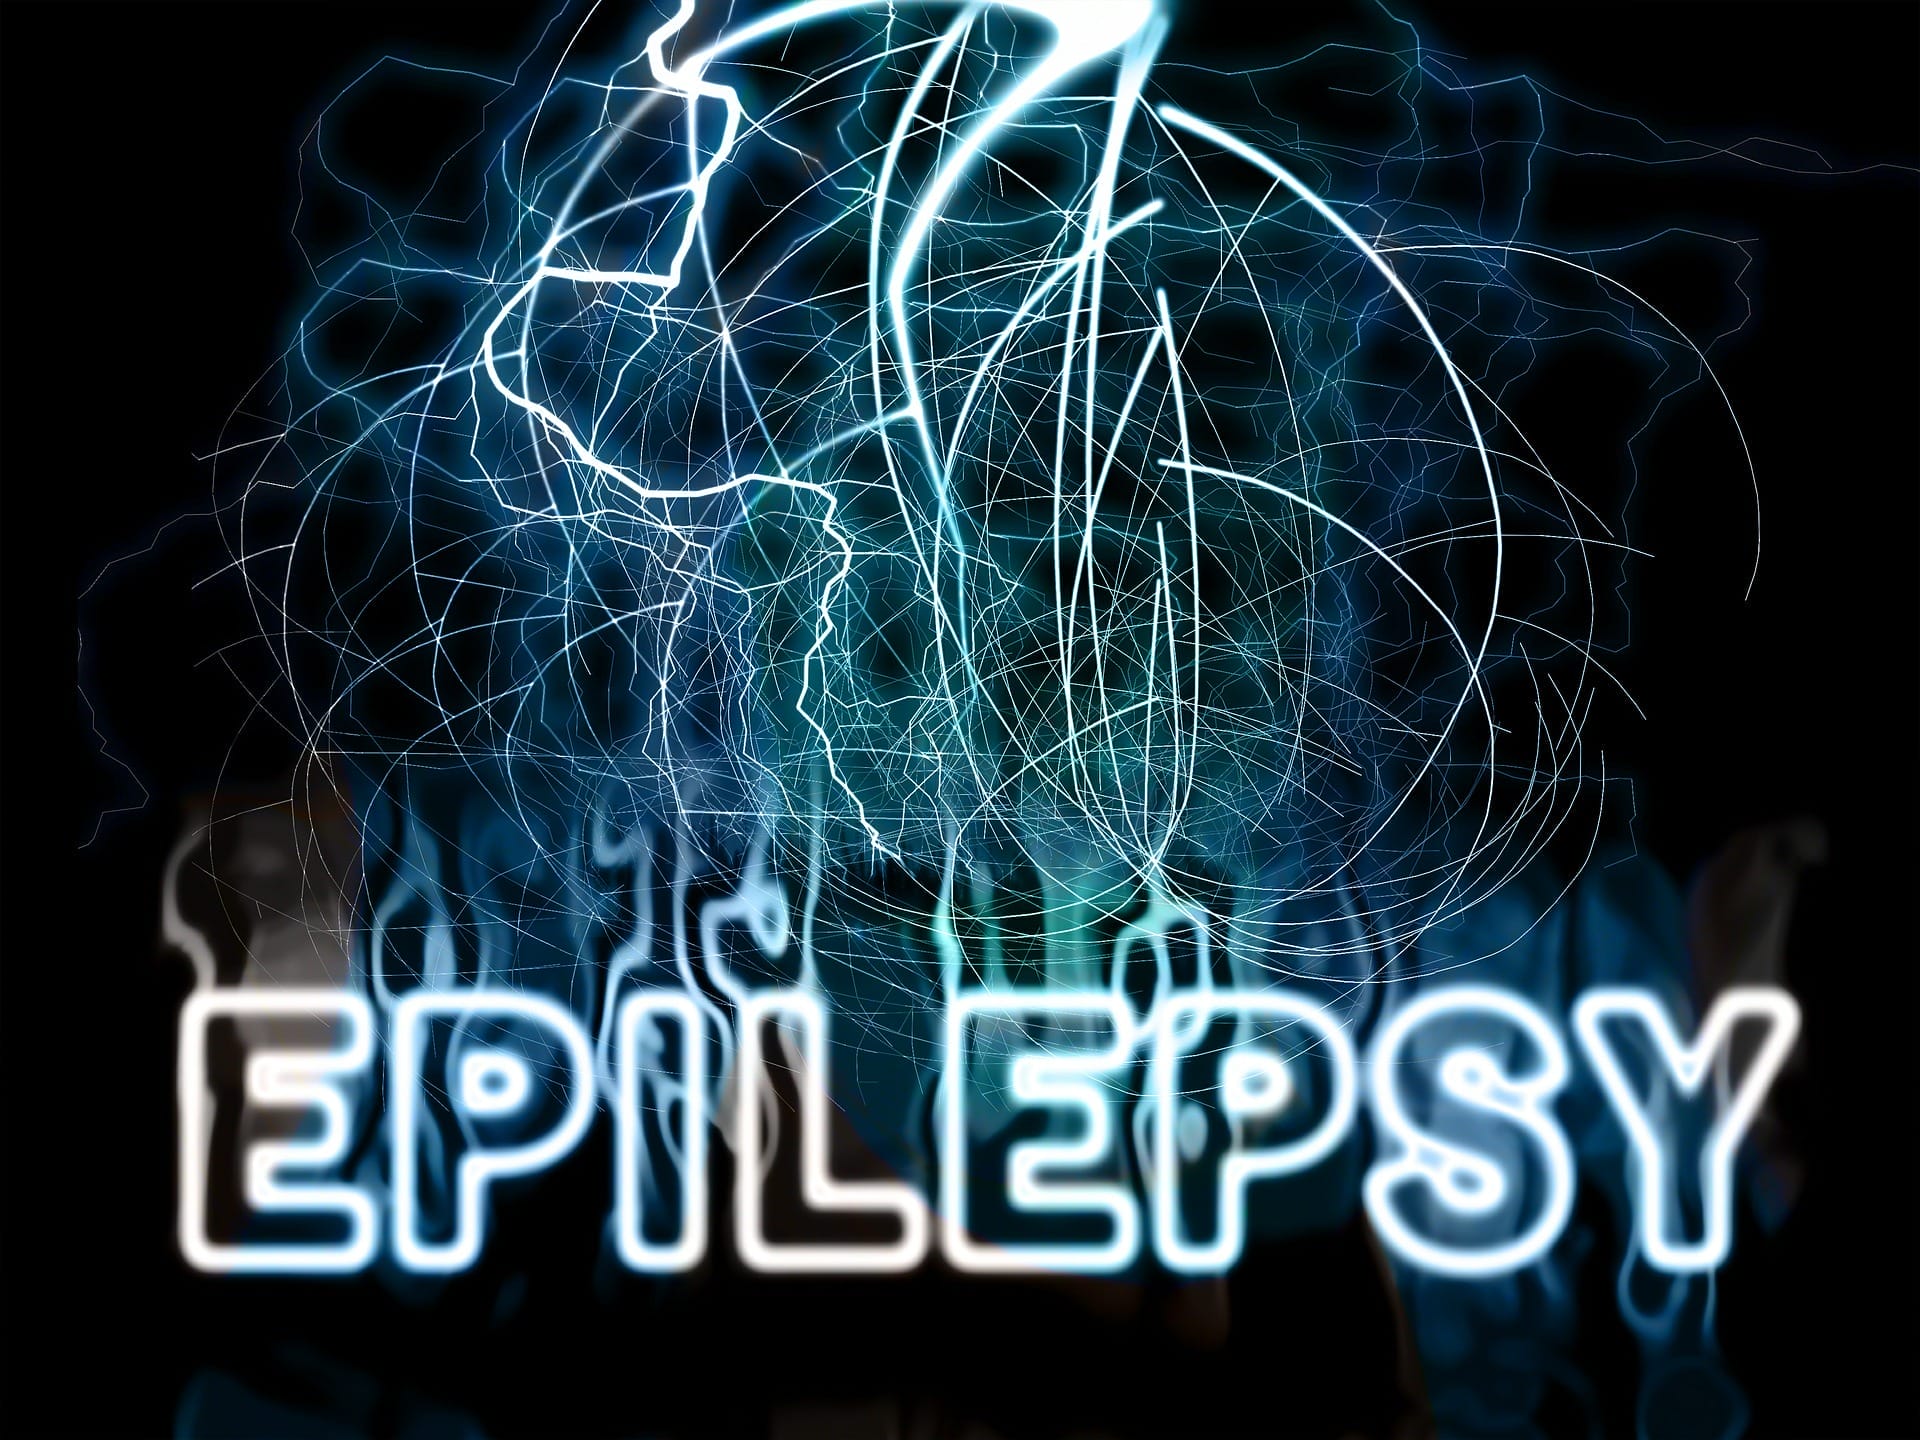 Kempenhaeghe предлагает обследование хирургии эпилепсии.  Принять более быстрое решение о том, есть ли хорошие шансы на успех хирургического лечения эпилепсии.